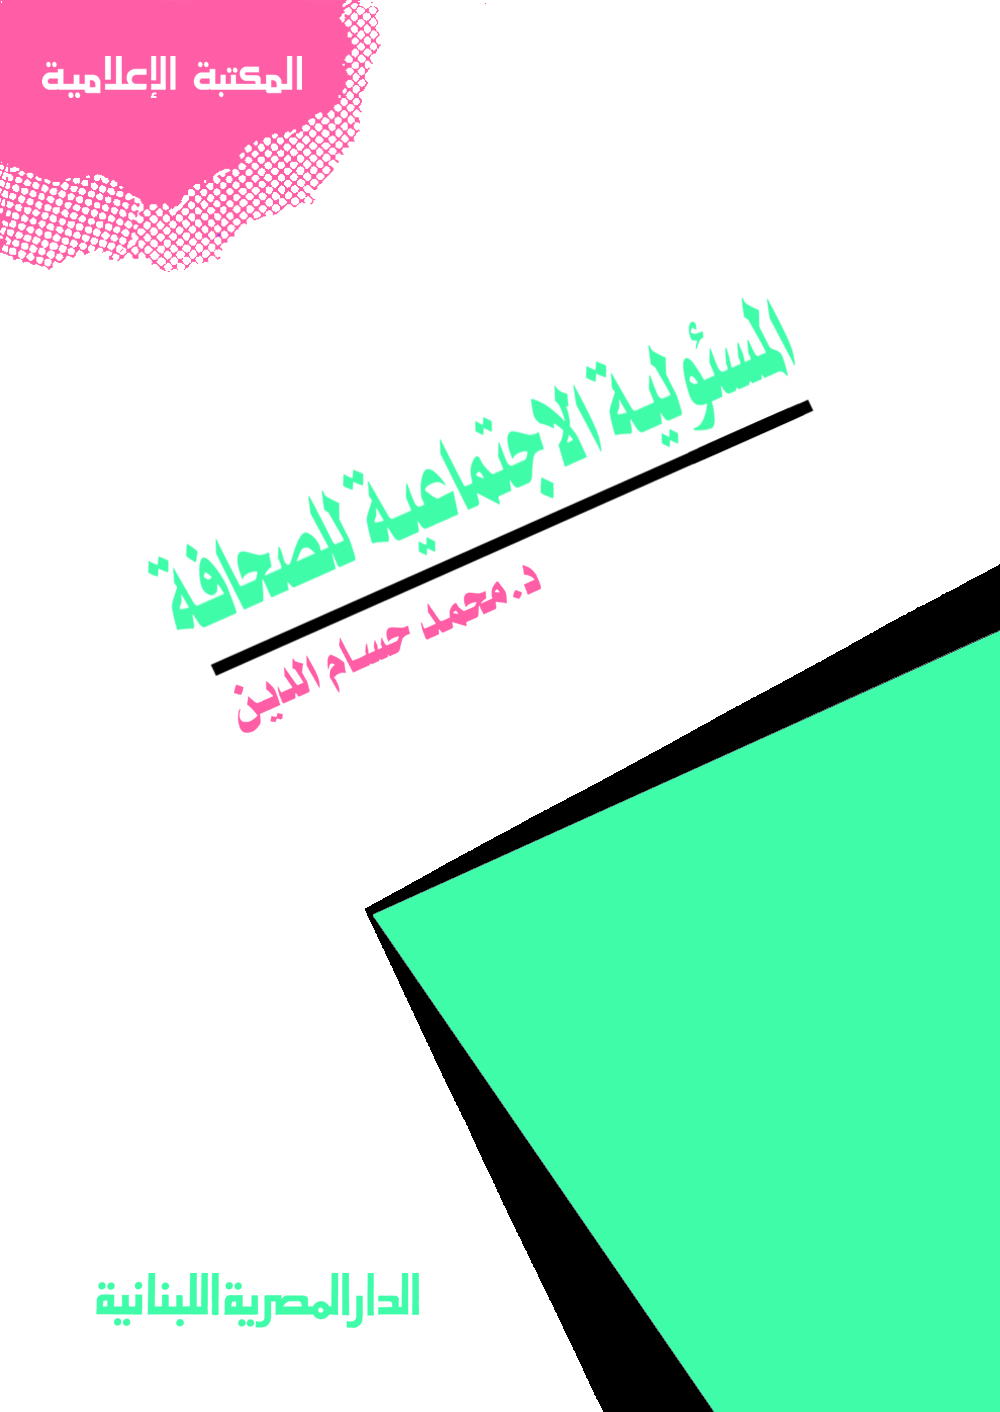 تحميل كتاب المسئولية الإجتماعية للصحافة pdf تأليف د محمد حسام الدين مجاناً | تحميل كتب pdf